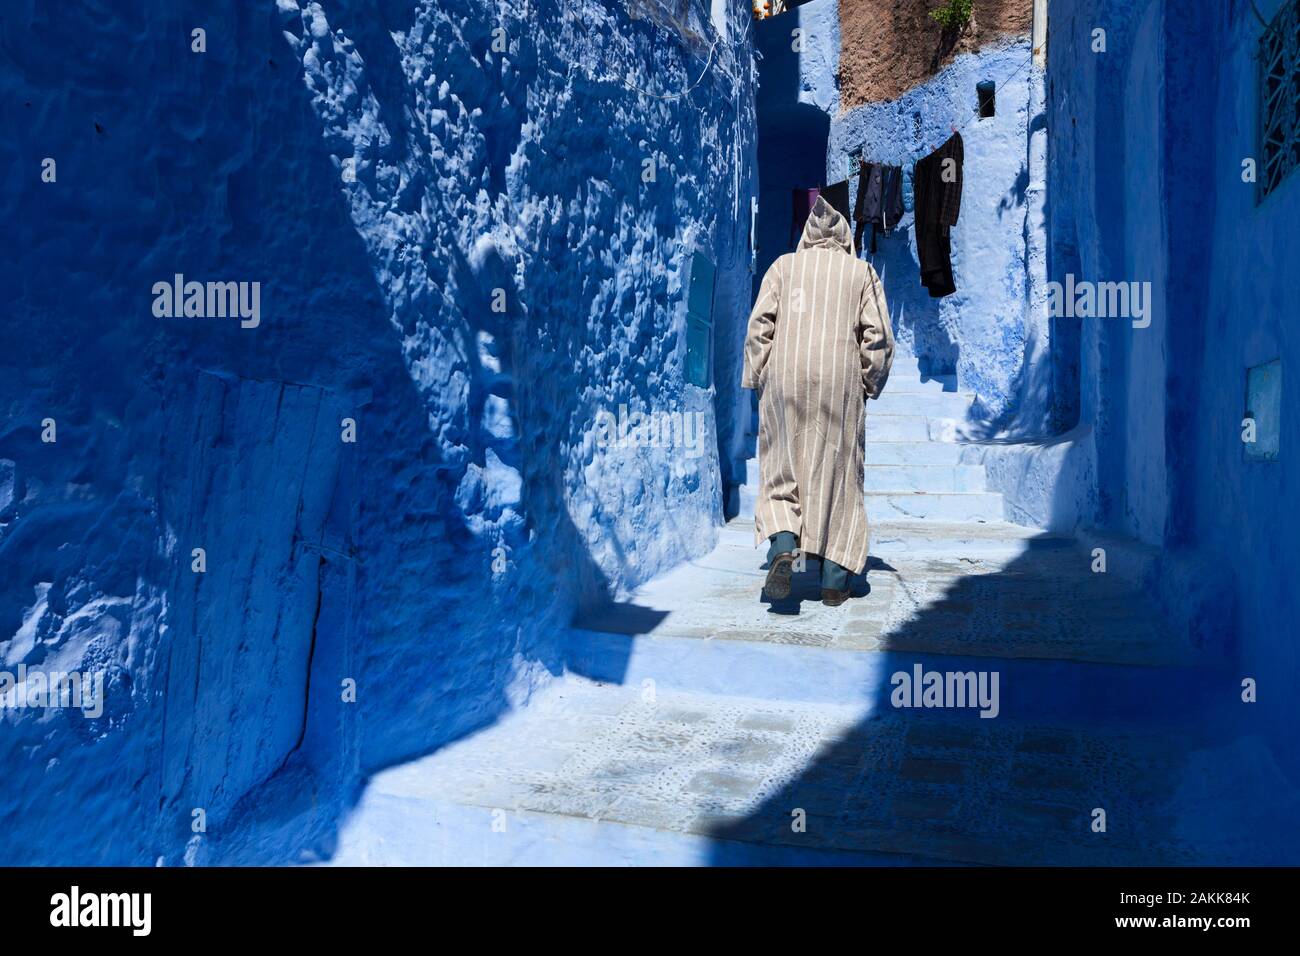 Homme solitaire à djellaba marchant dans la médina de Chefchaouen (également connu sous le nom de Chaouen), Maroc Banque D'Images